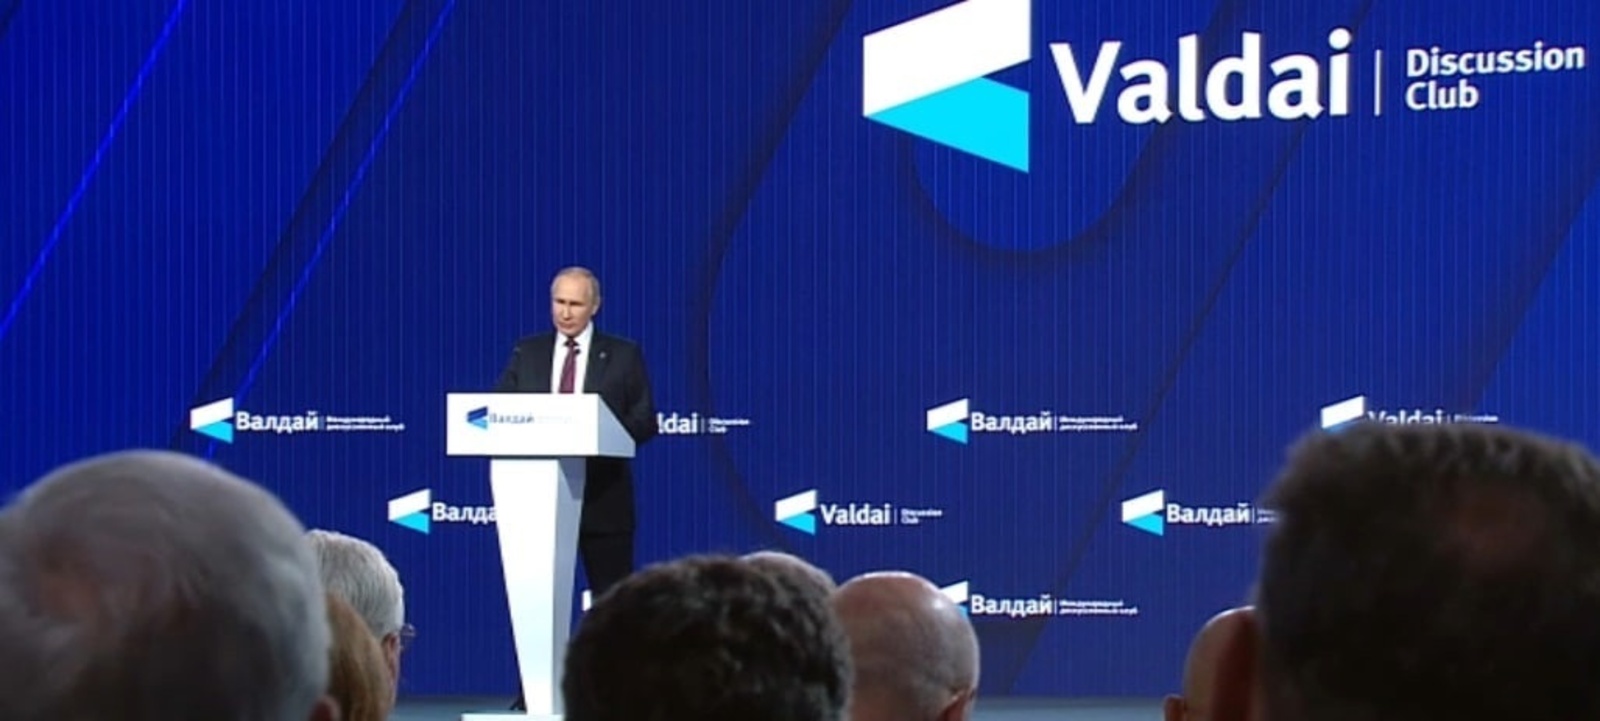 Әле Владимир Путин "Валдай" клубының пленар сессияһында сығыш яһай